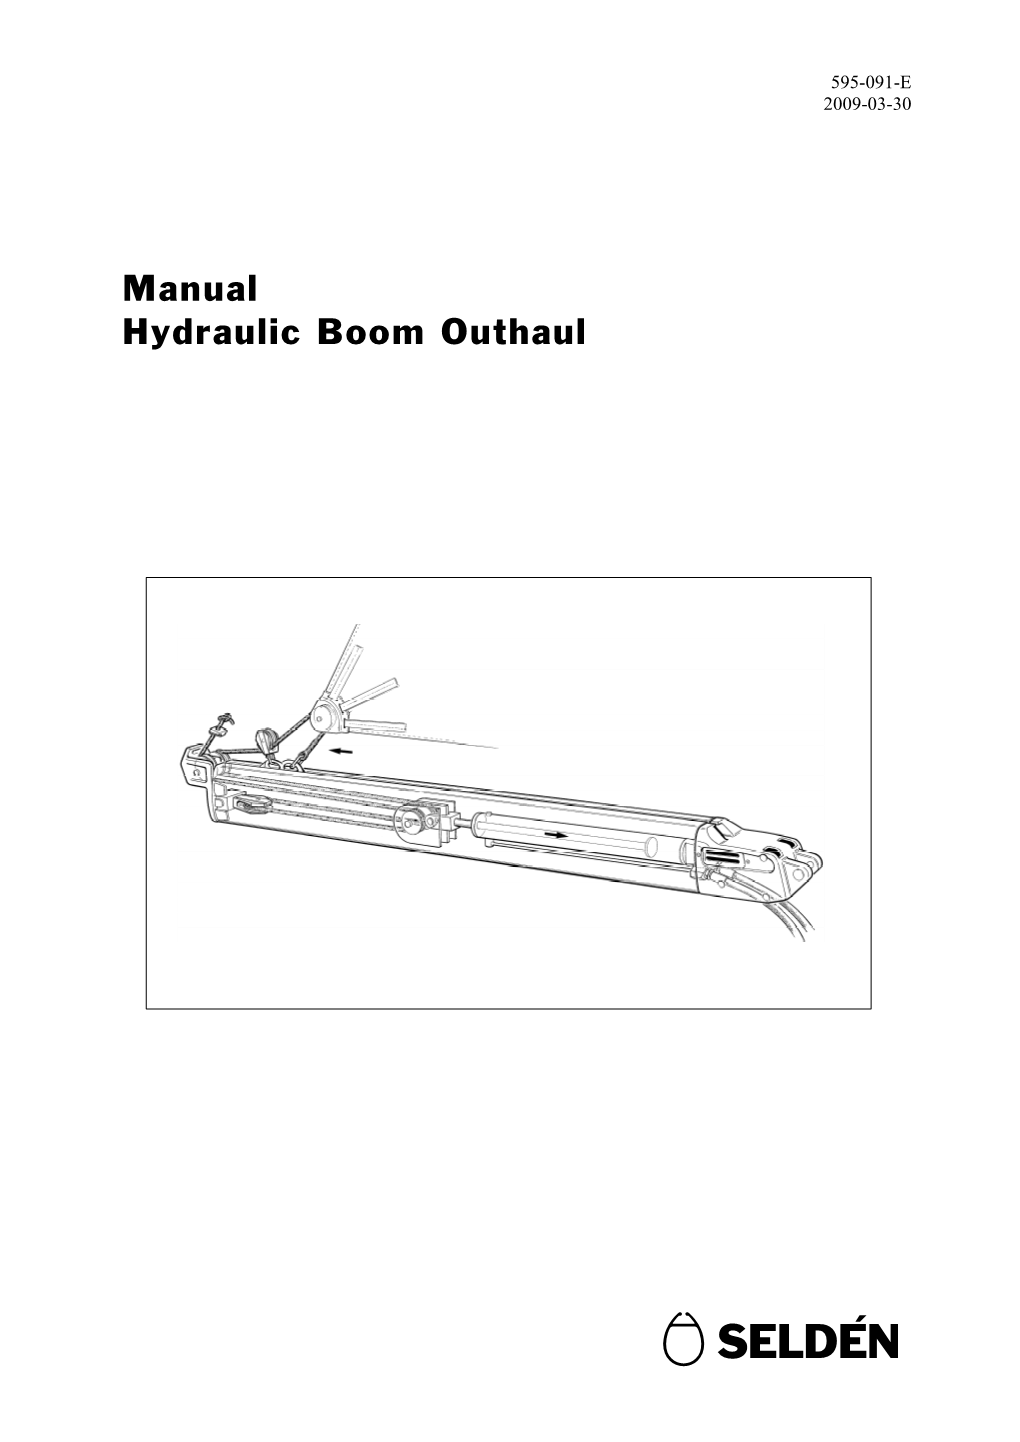 Manual Hydraulic Boom Outhaul